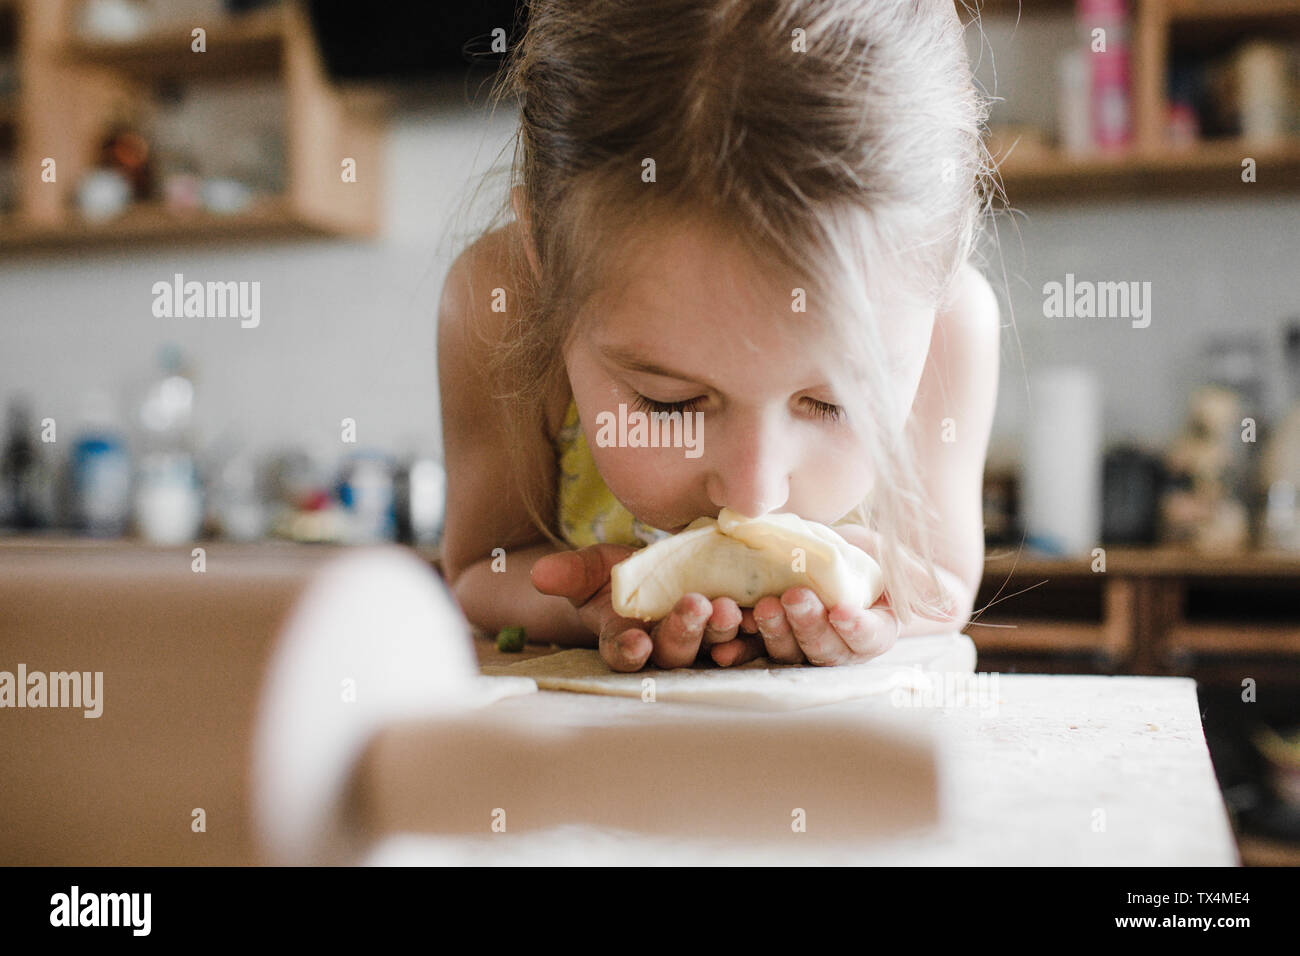 Little girl smelling freshly prepared stuffed pastry Stock Photo